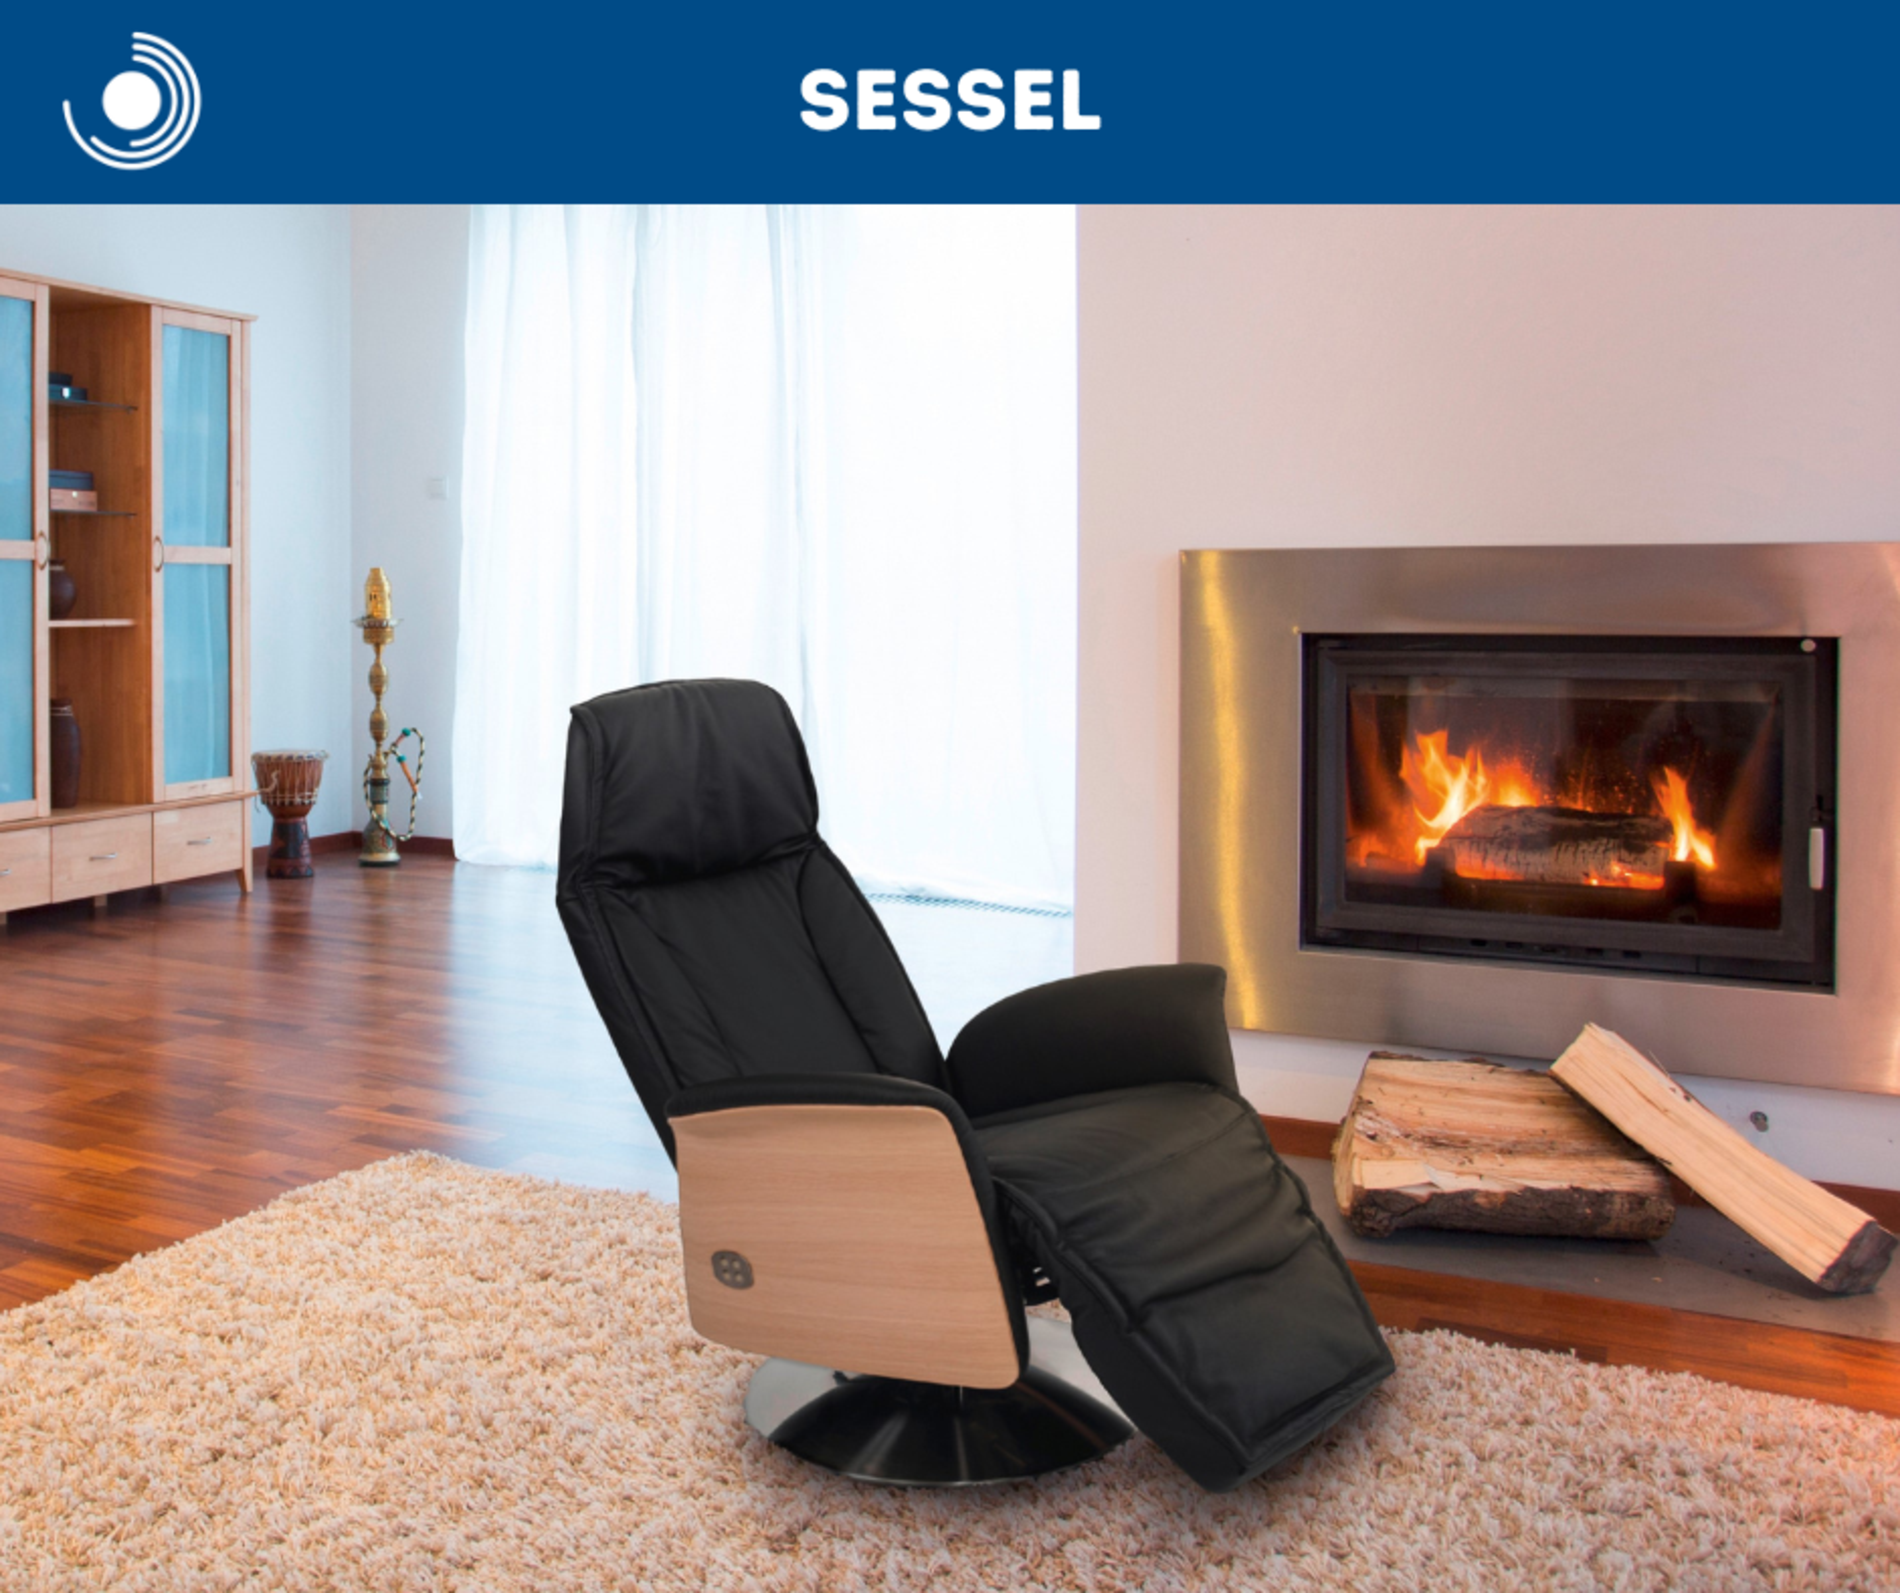 Sessel, Entspannungssessel, Relaxsessel - besondere Angebote für gemütliches und entspanntes Sitzen